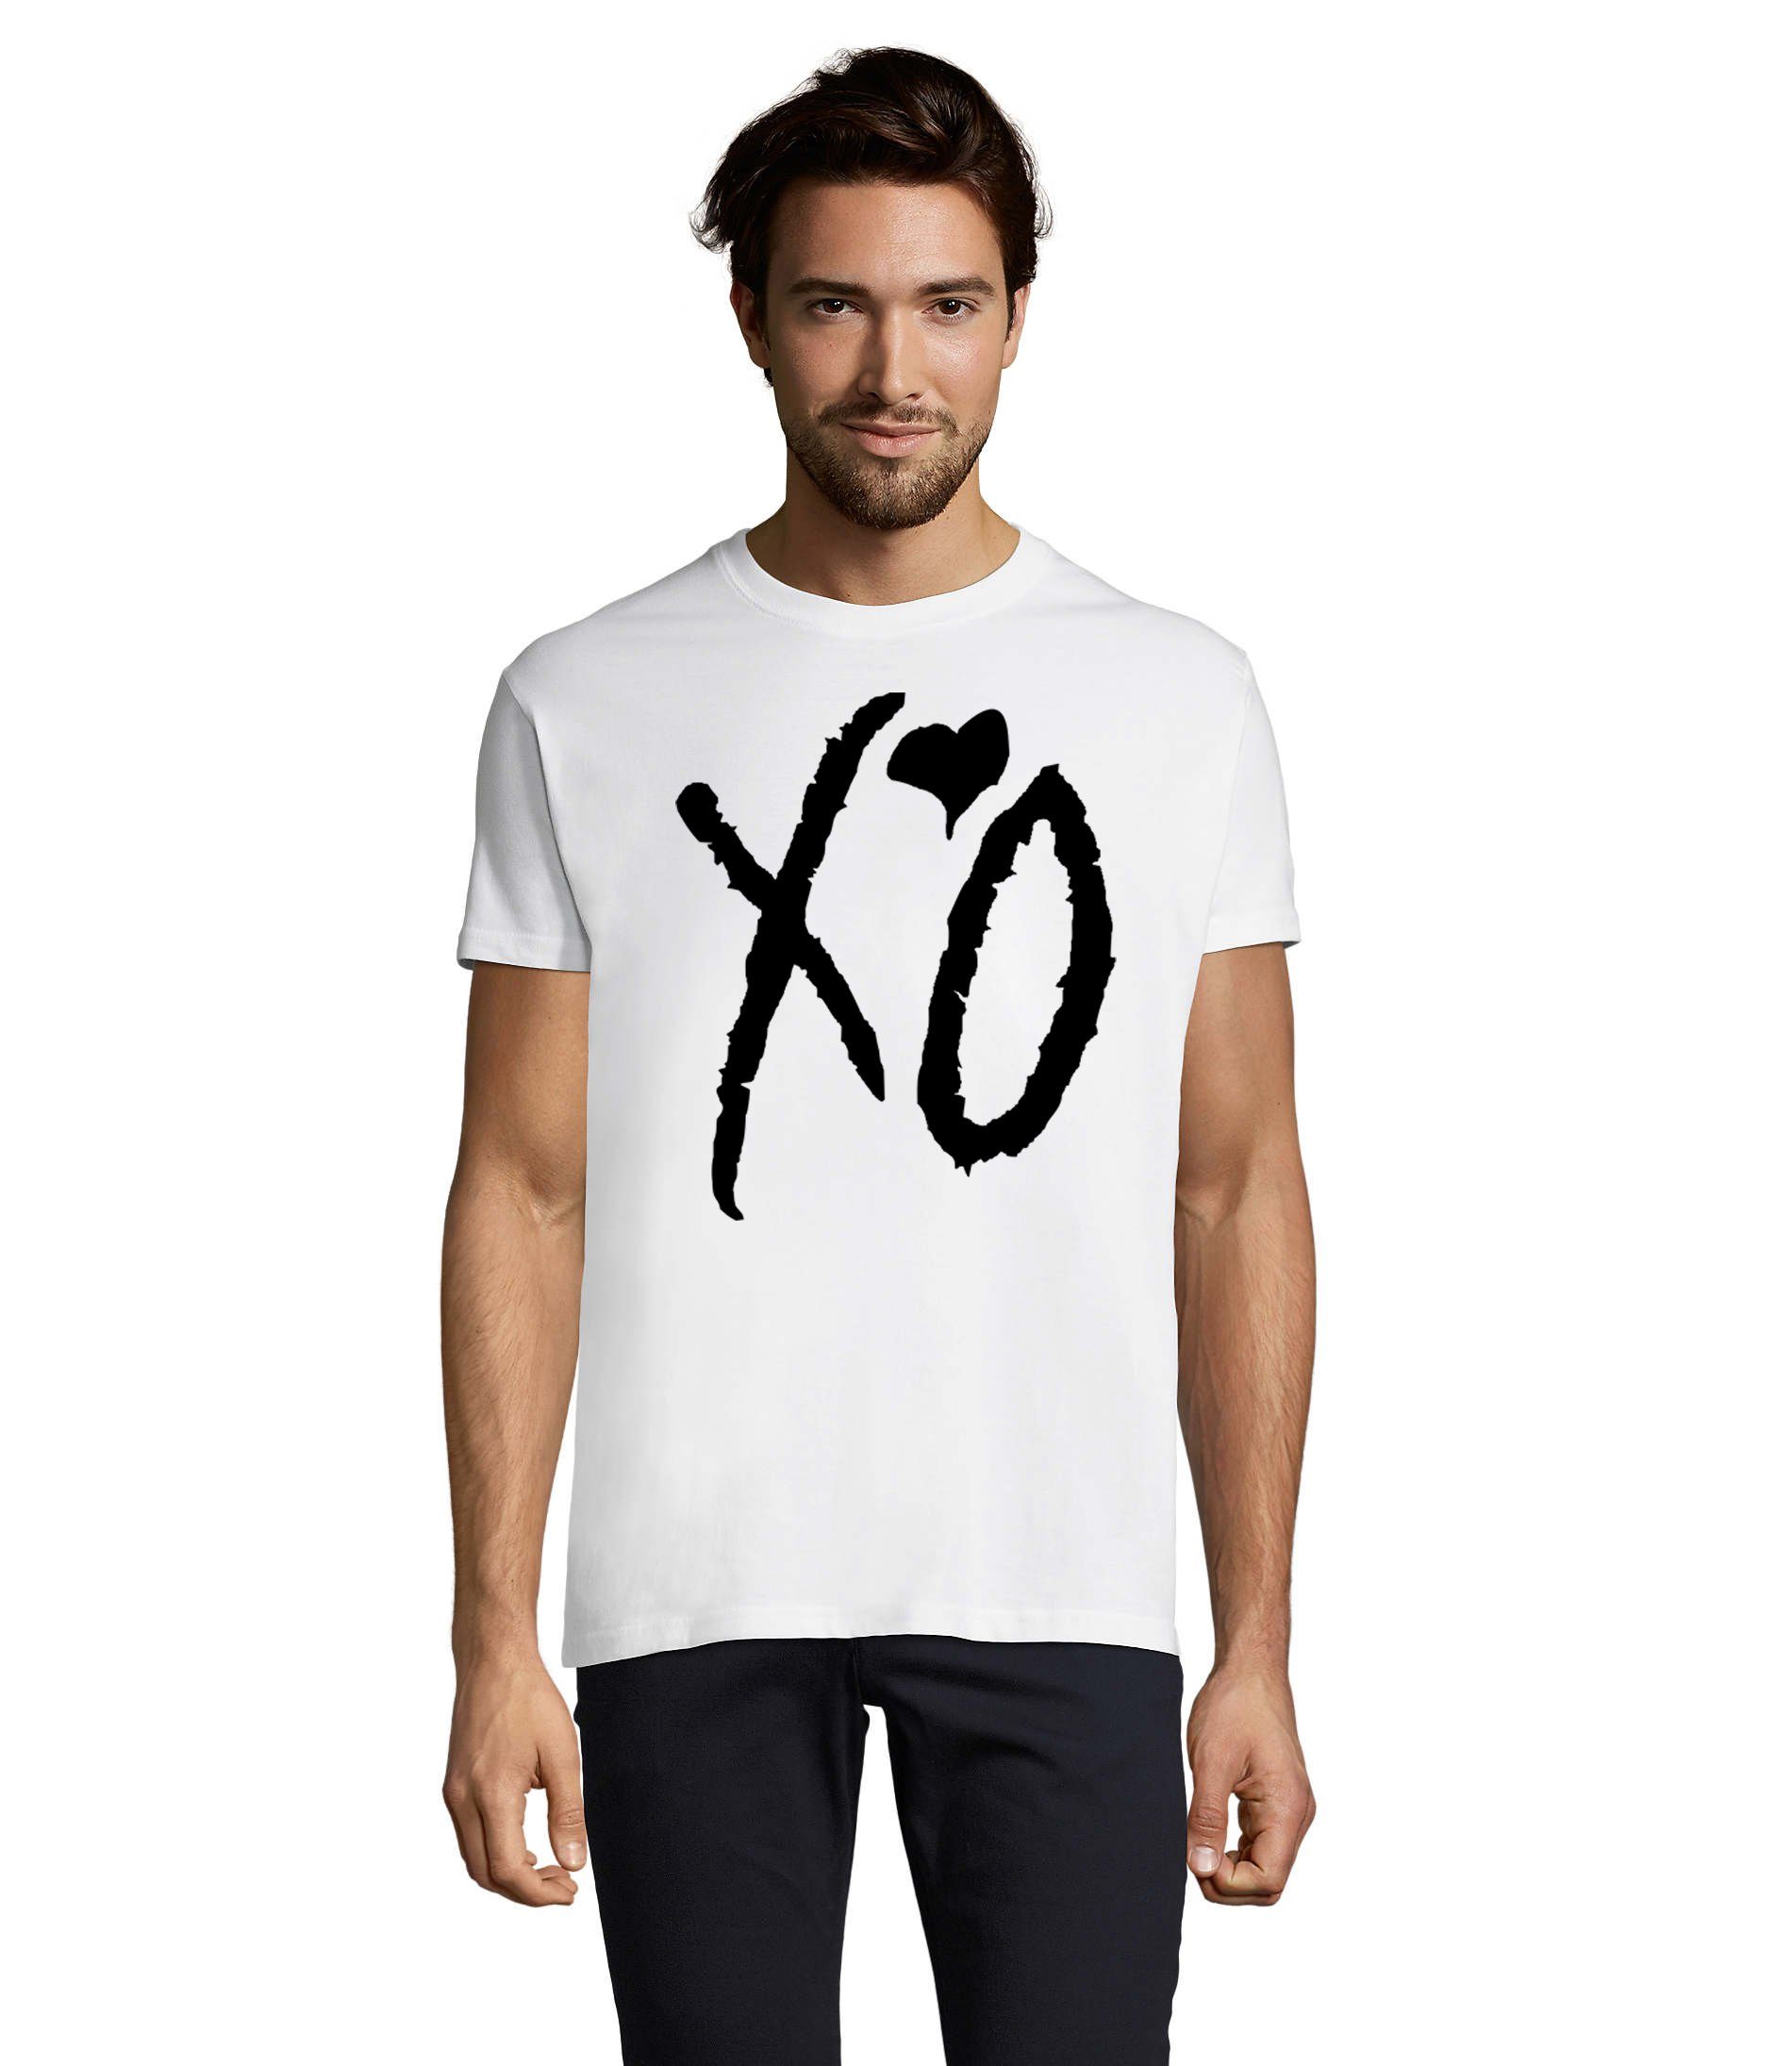 Blondie & Brownie T-Shirt Herren XO Kisses Hugs Weeknd Starboy Musik Fan Festival Weiß